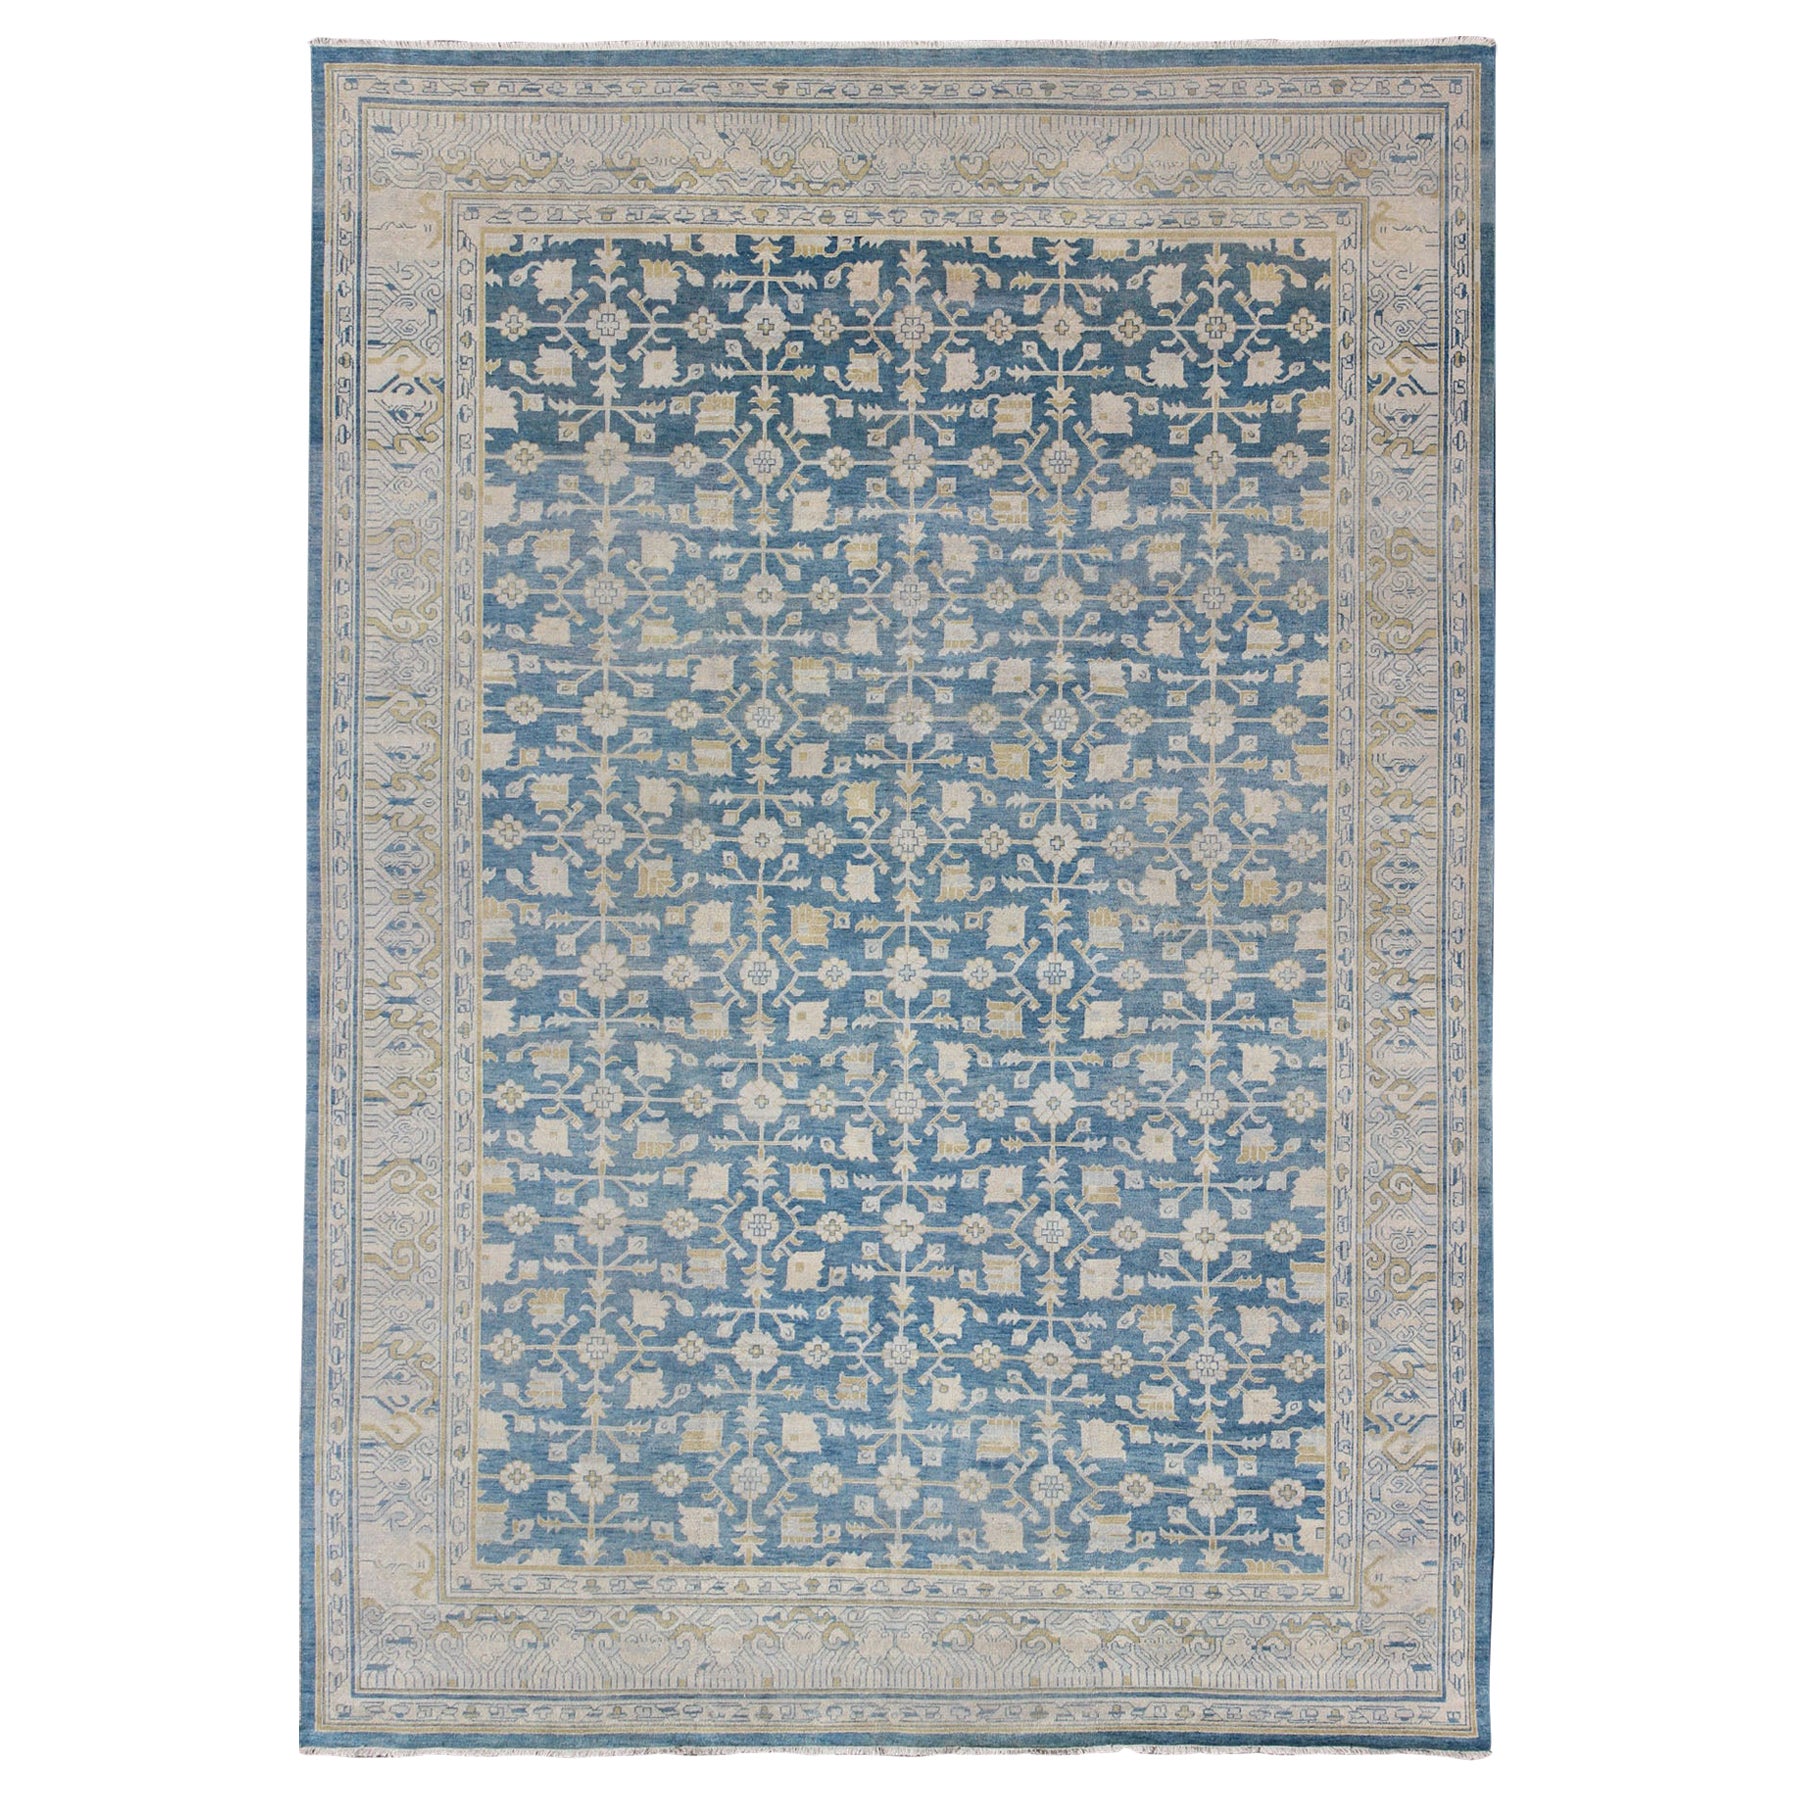 Khotan-Teppich im Khotan-Design mit subgeometrischem Muster in Blau, Hellbraun und Gold